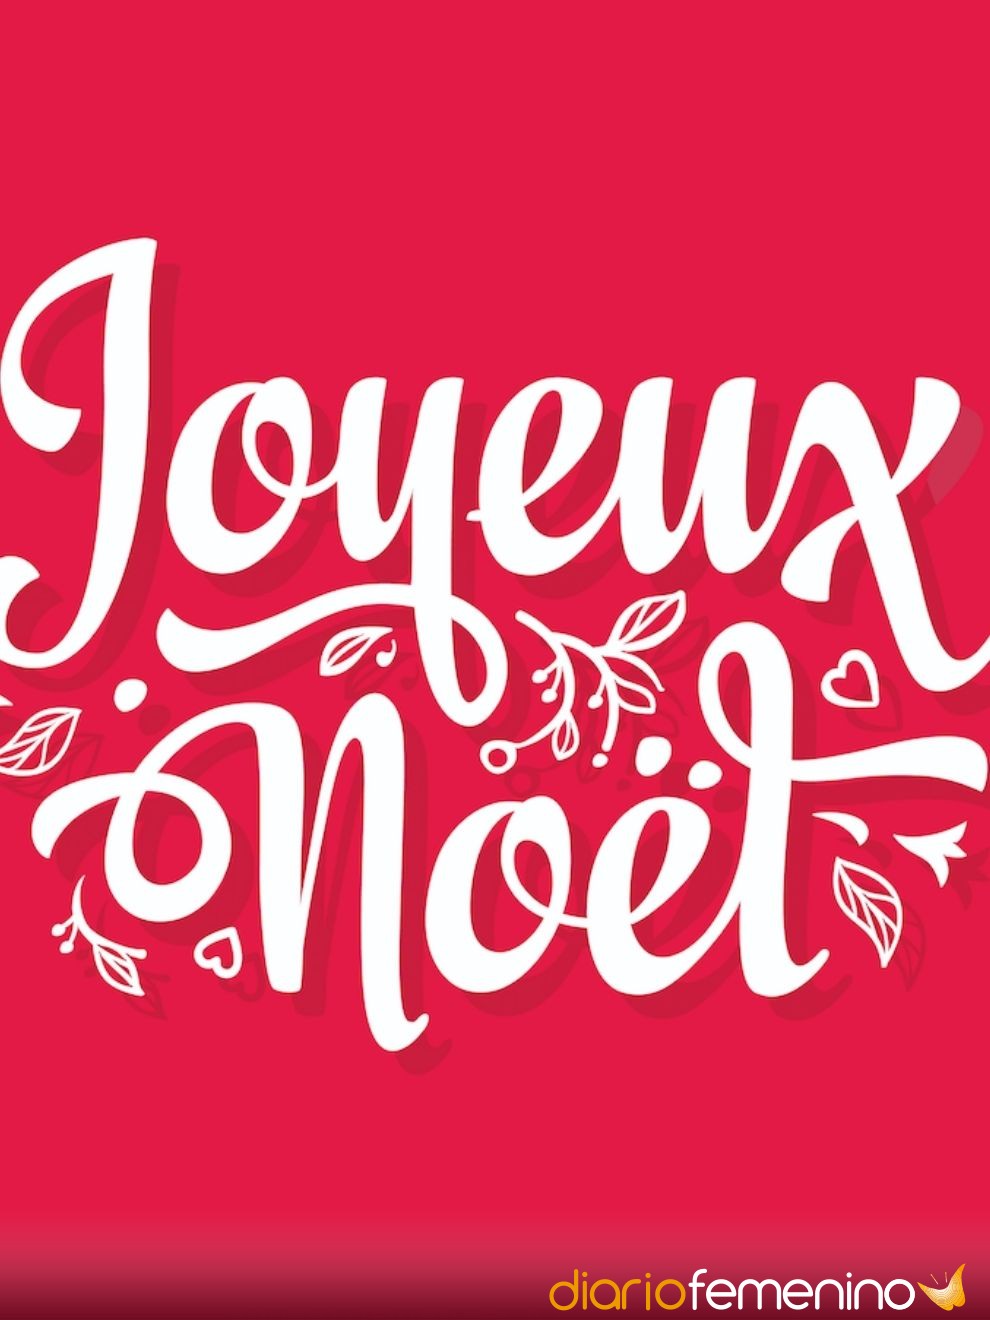 Joyeux Noël! Frases de Navidad y Año Nuevo en francés traducidas